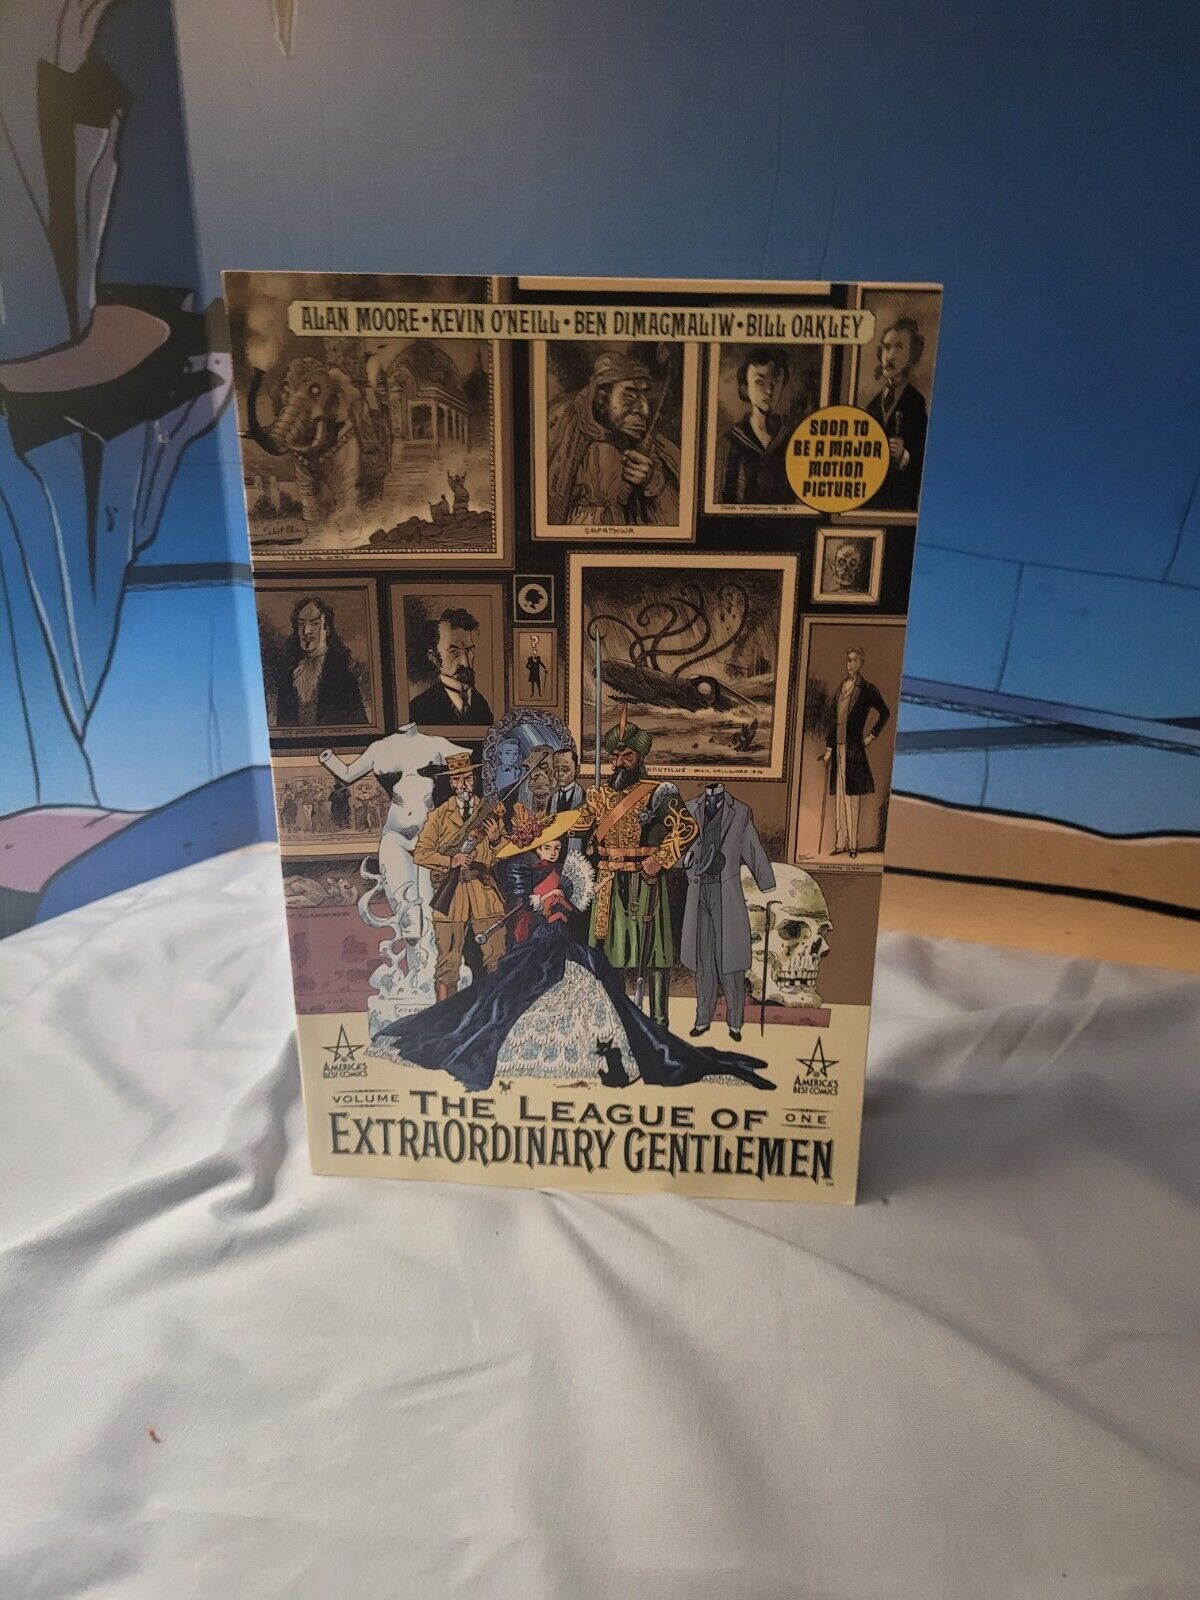 The League of Extraordinary Gentlemen, Volume 1